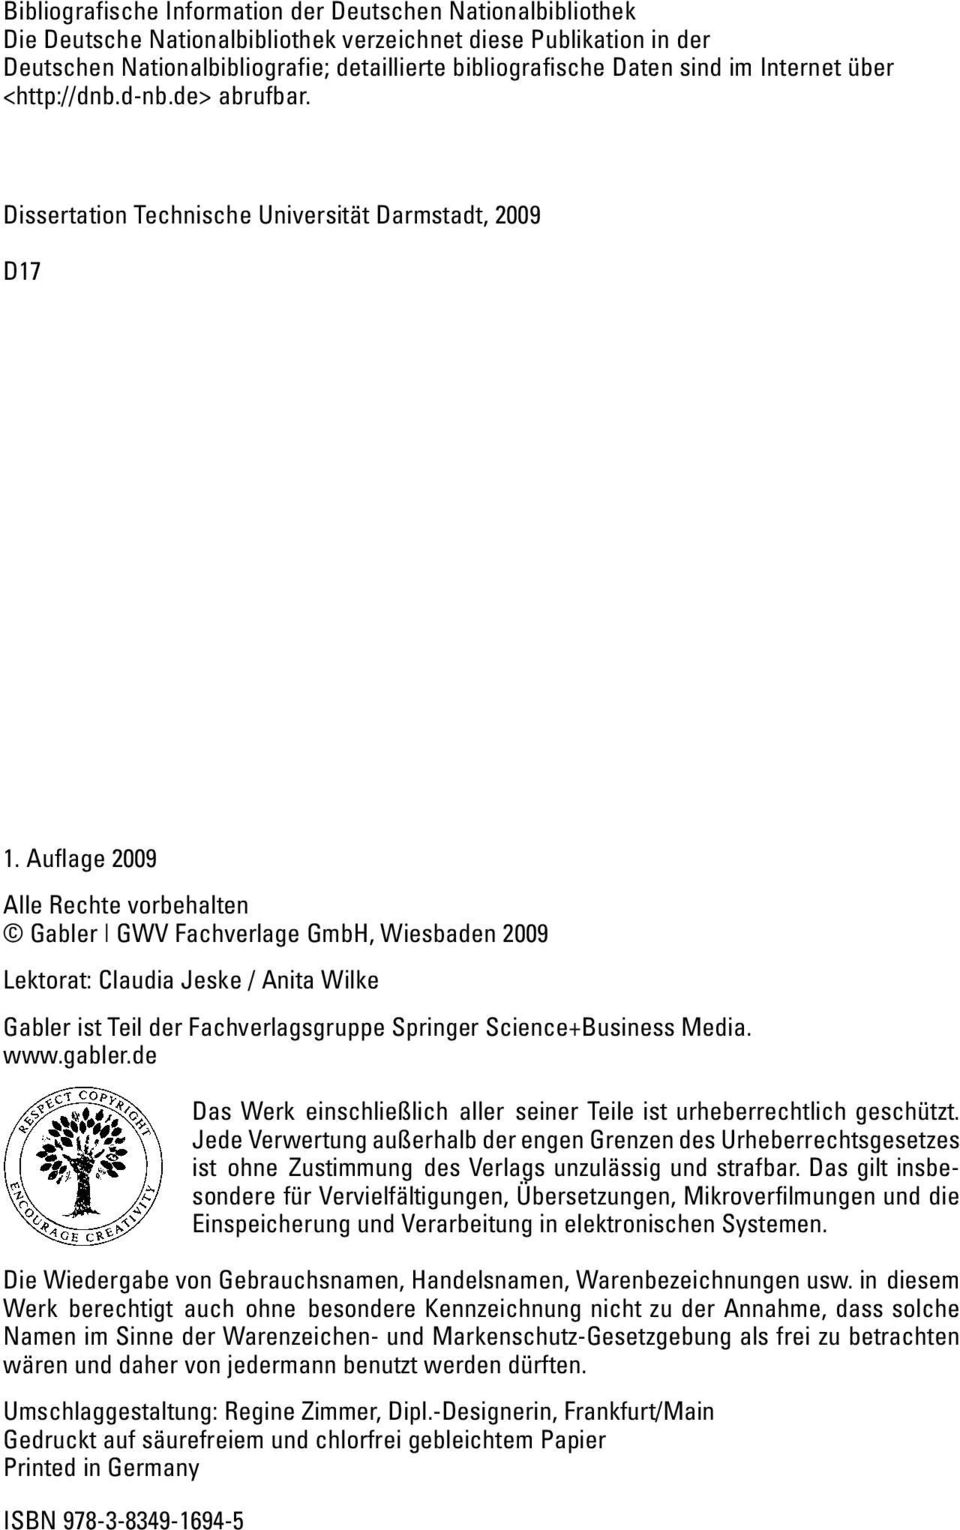 Auflage 2009 Alle Rechte vorbehalten Gabler GWV Fachverlage GmbH, Wiesbaden 2009 Lektorat: Claudia Jeske / Anita Wilke Gabler ist Teil der Fachverlagsgruppe Springer Science+Business Media. www.